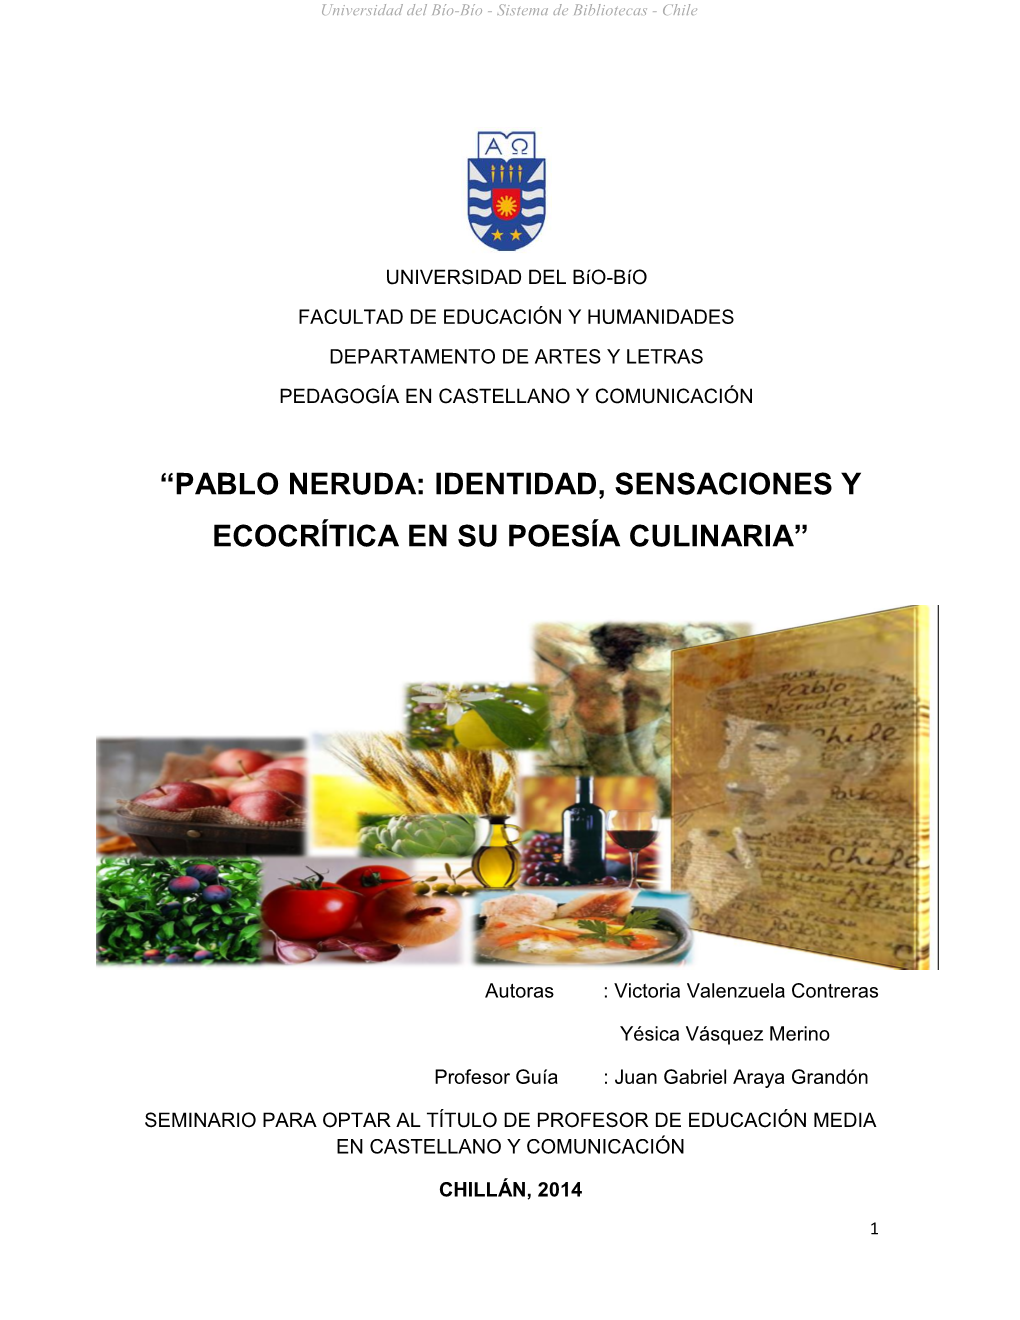 “Pablo Neruda: Identidad, Sensaciones Y Ecocrítica En Su Poesía Culinaria”